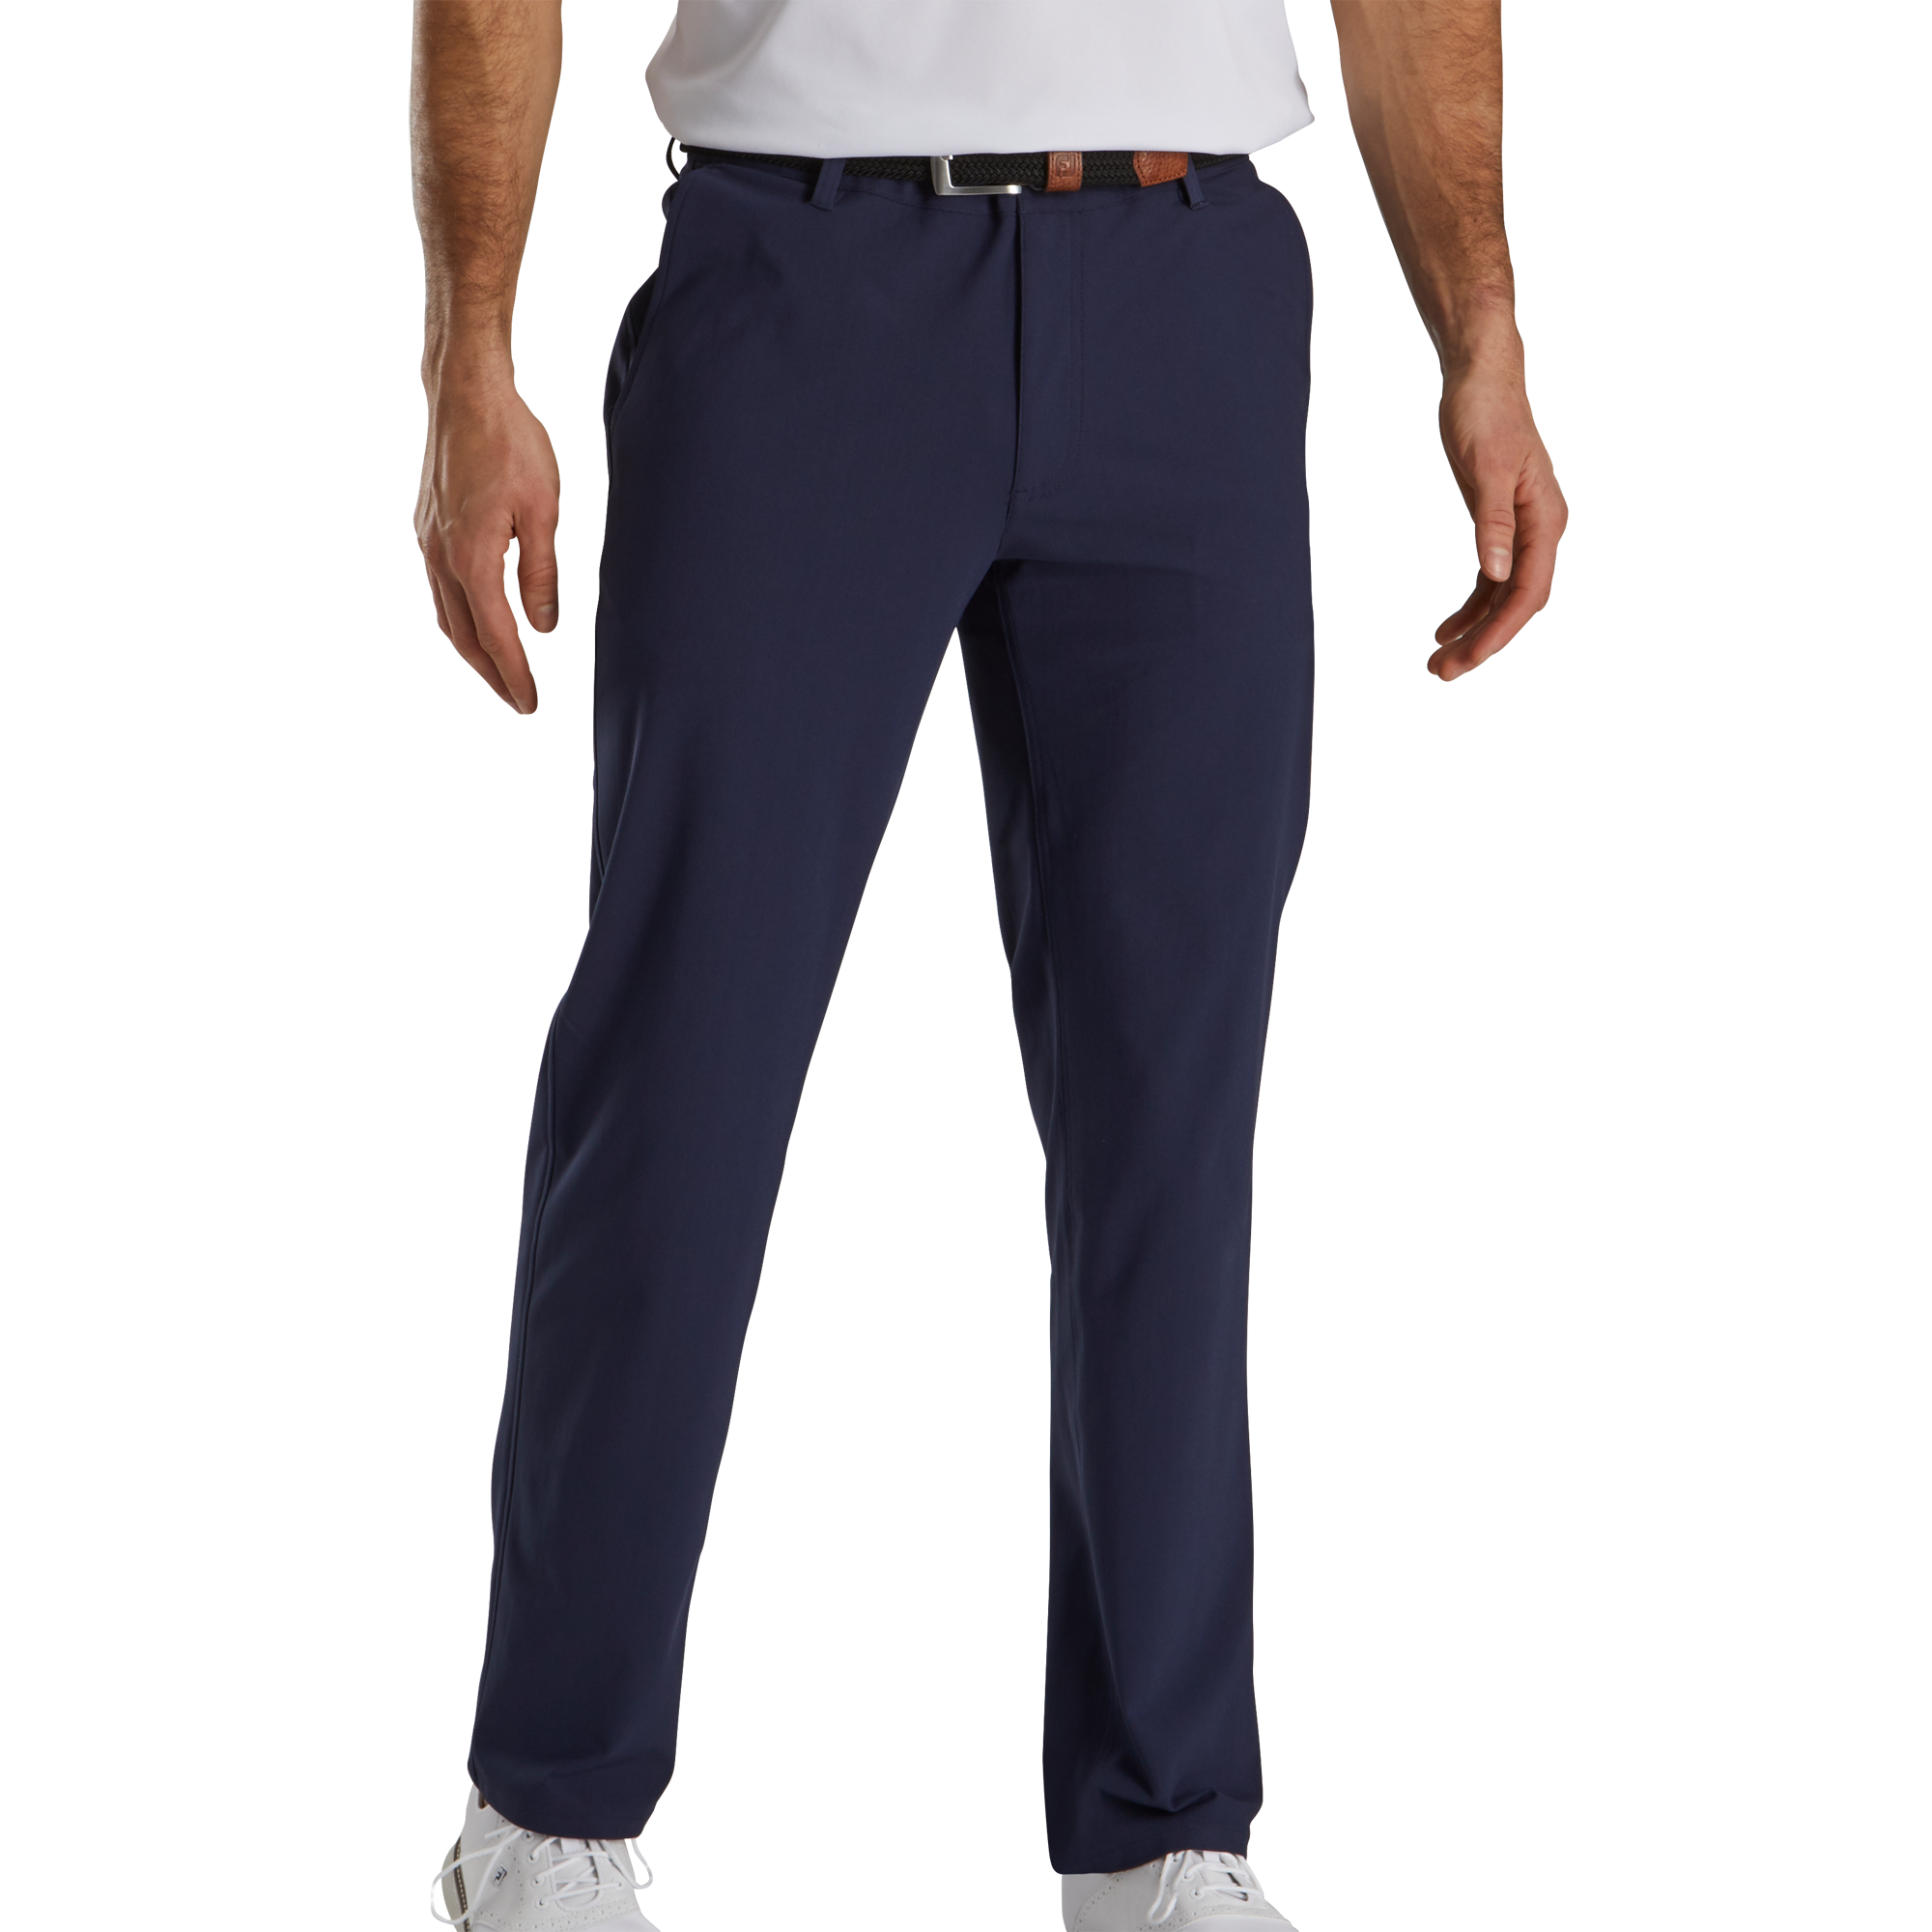 FootJoy NEW Performance Knit Pants – Shop Team Golf